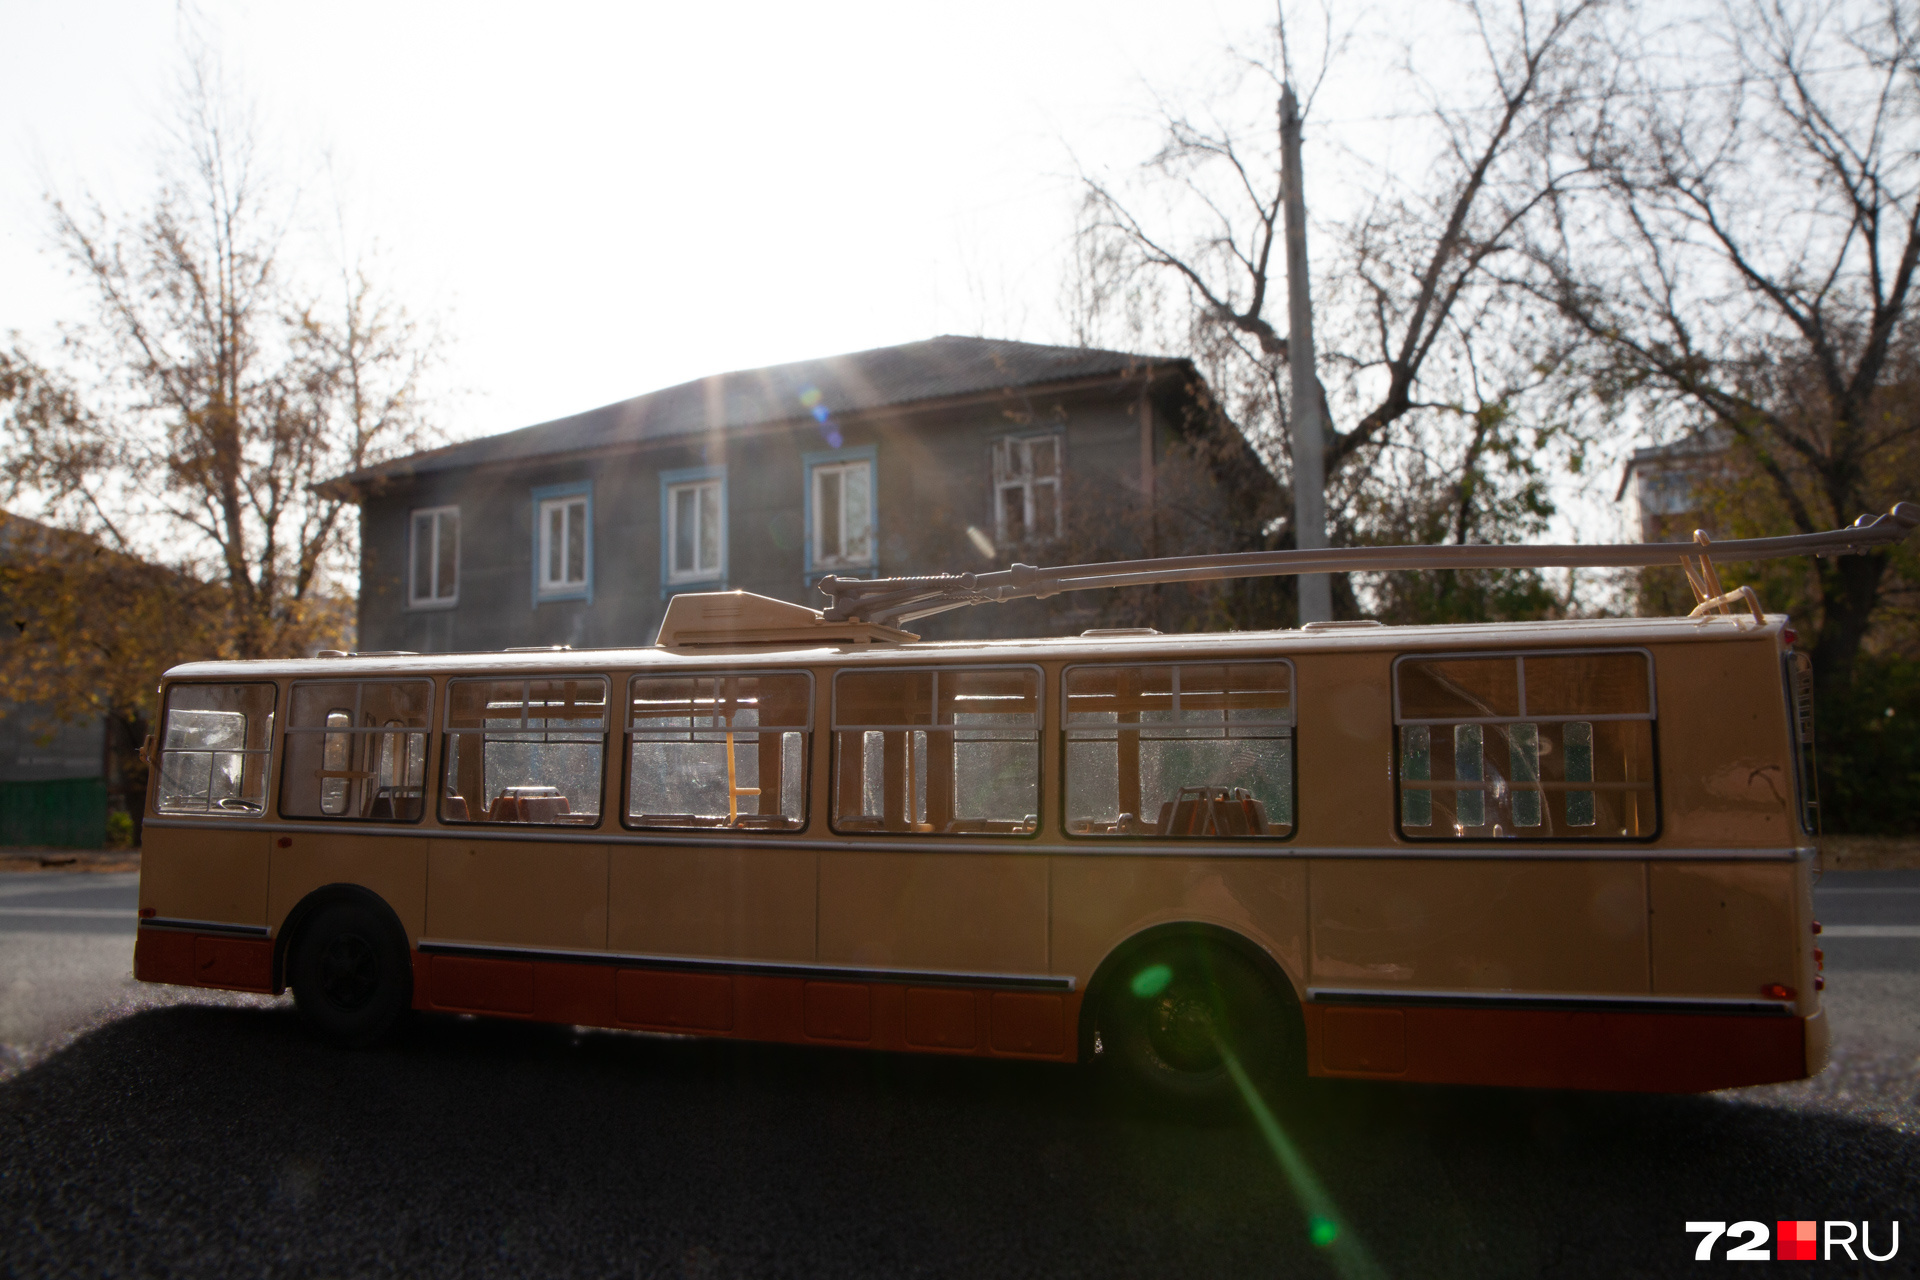 Тюменские троллейбусы ездили по 15 маршрутам. Рассказывайте, кто и куда на нем добирался? 